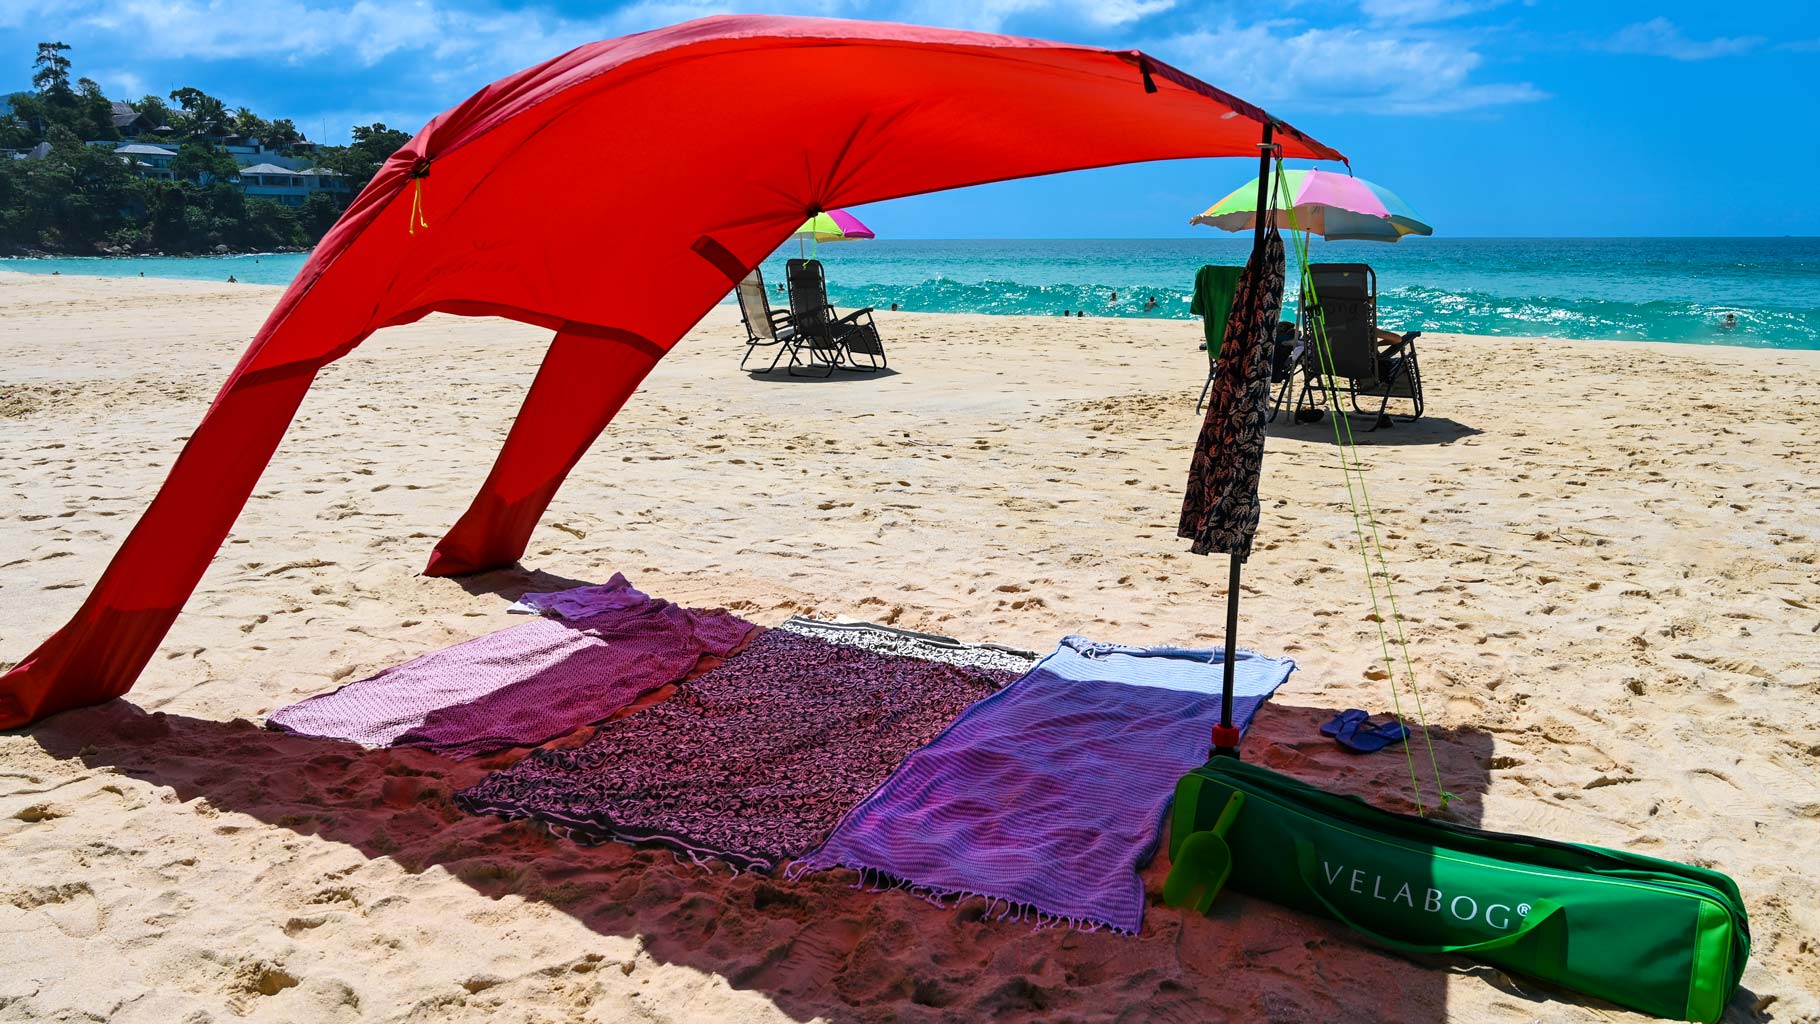 Żagiel słoneczny namiot plażowy Velabog Breeze, czerwony, na plaży z lekkim wiatrem. Żagiel słoneczny, parasol plażowy i namiot plażowy w jednym. Dużo więcej cienia w porównaniu ze zwykłymi parasolami plażowymi. Najlepsze zadaszenie na plażę.